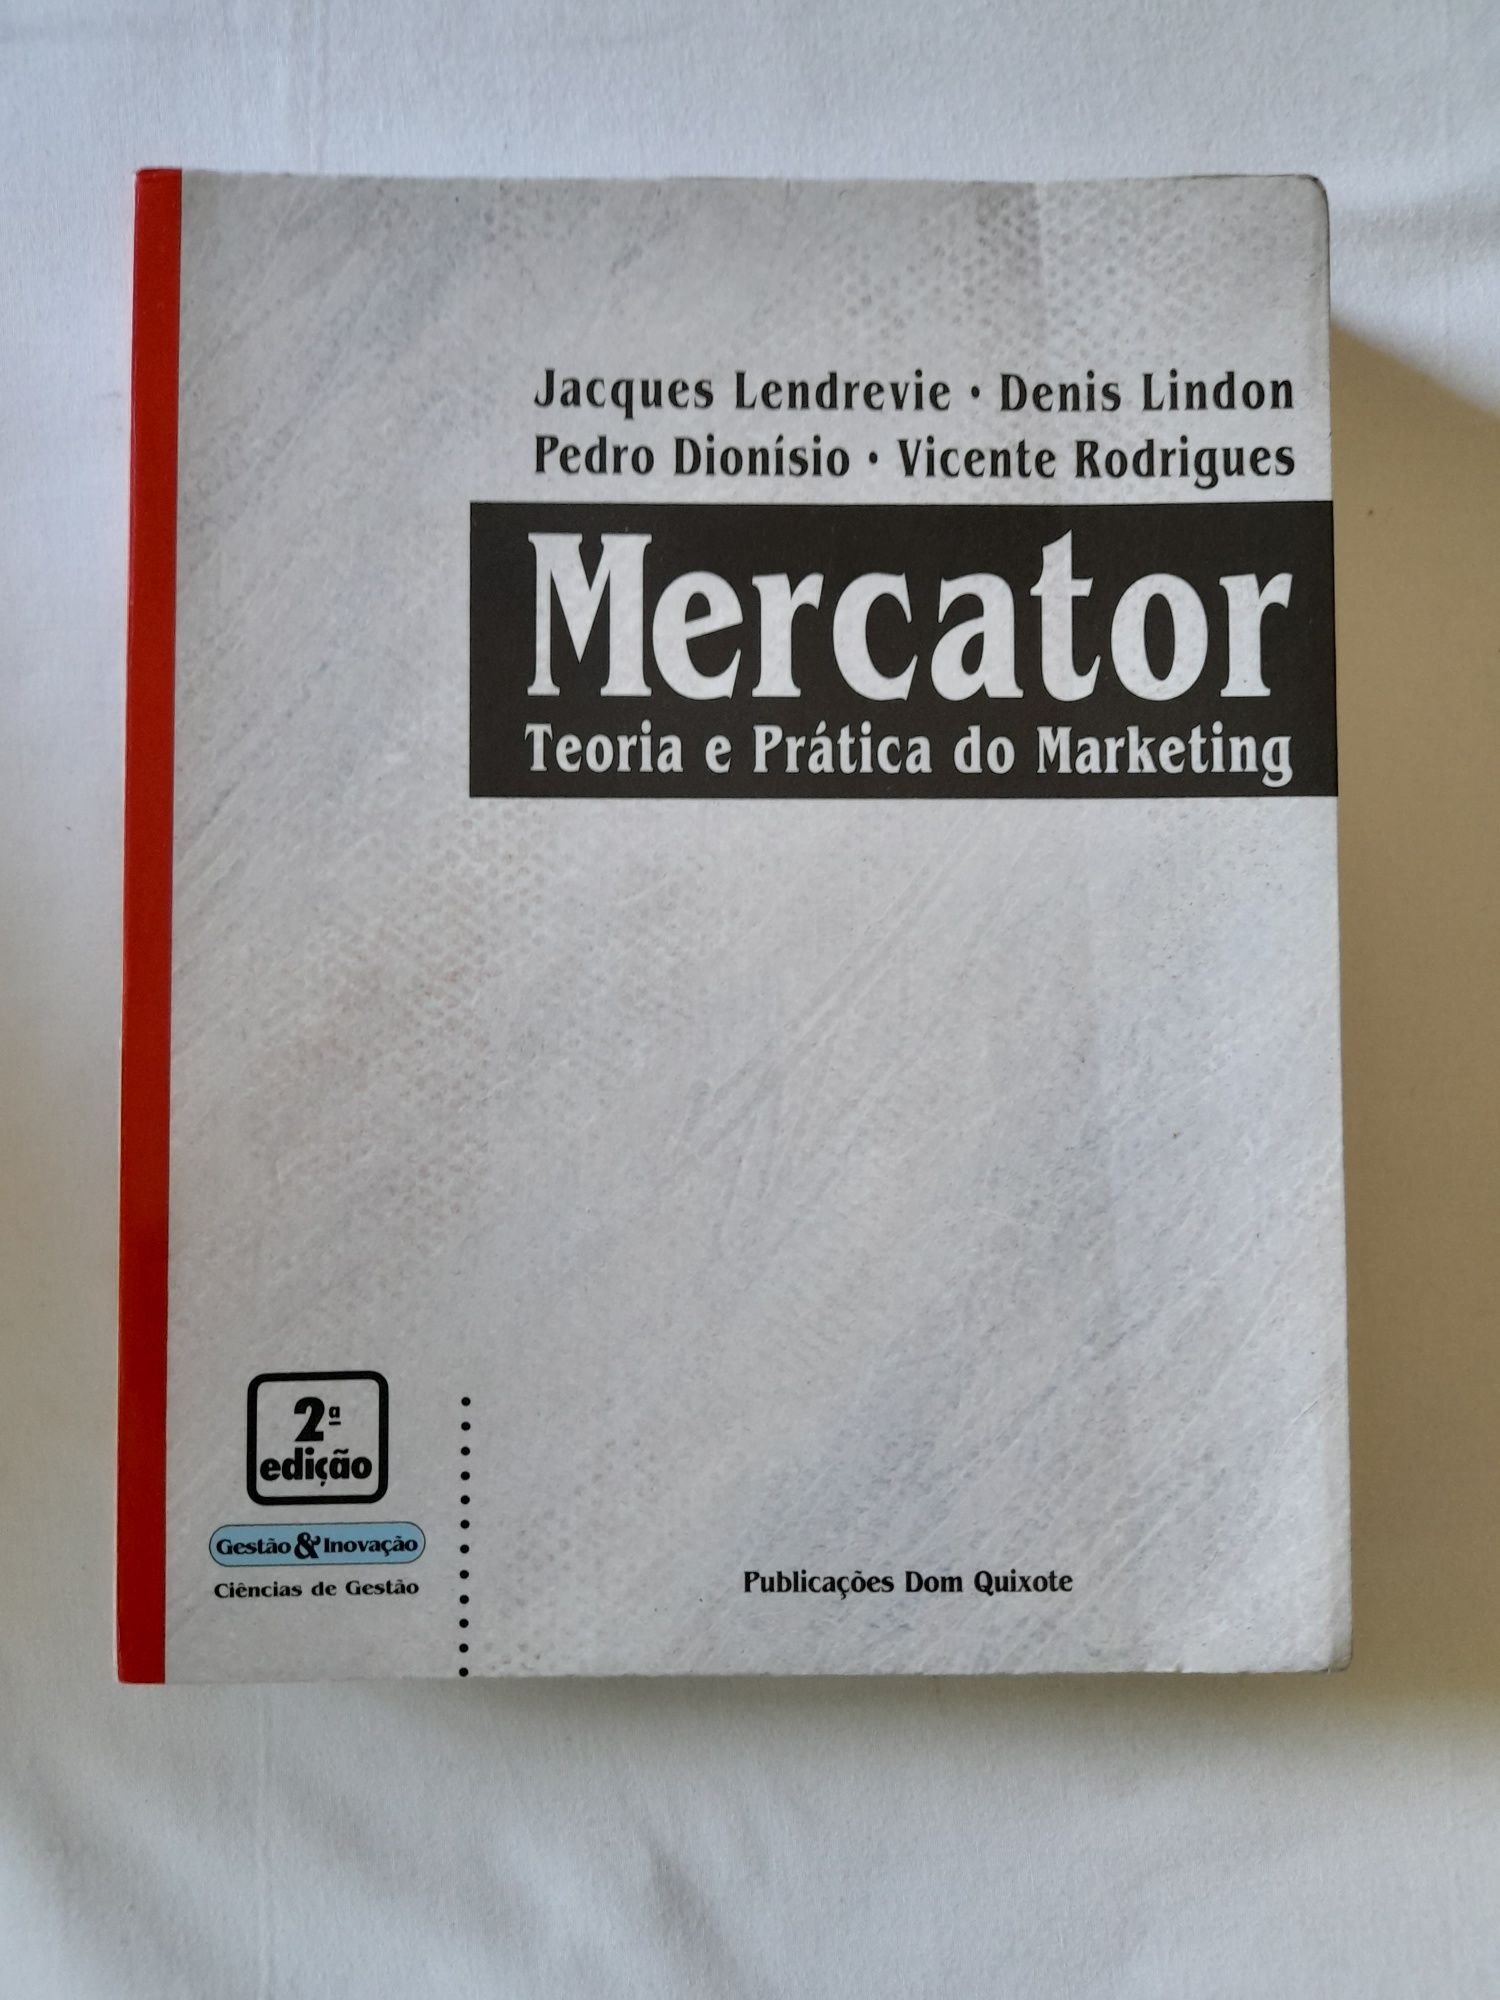 Livro Mercator Teoria e Prática do Marketing - Jacques Lendrevie